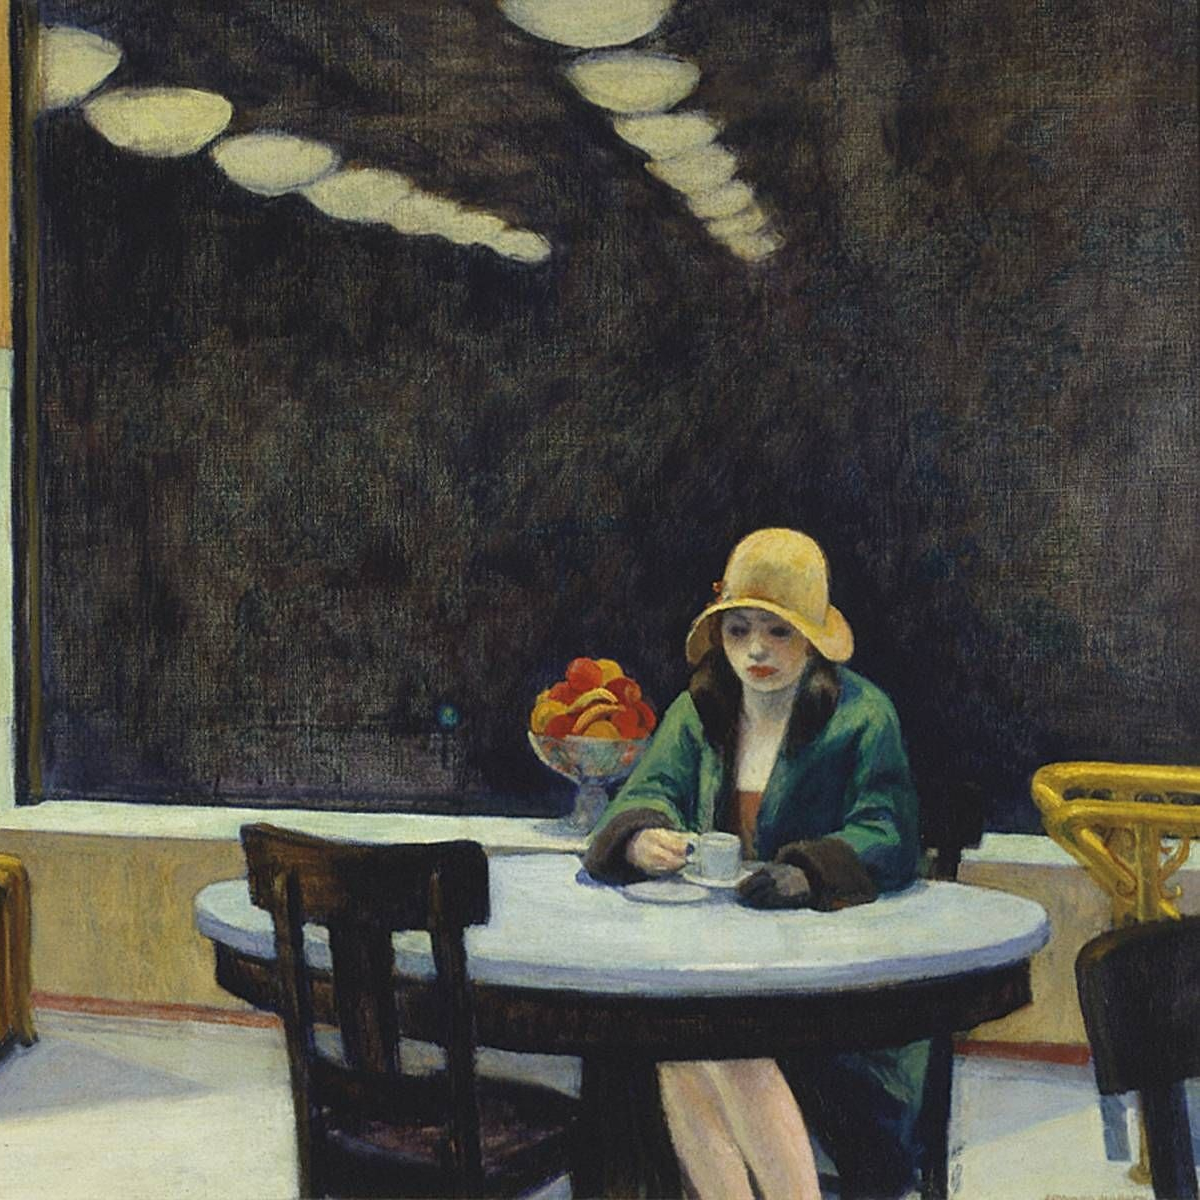 Edward Hopper - Automat (1927)